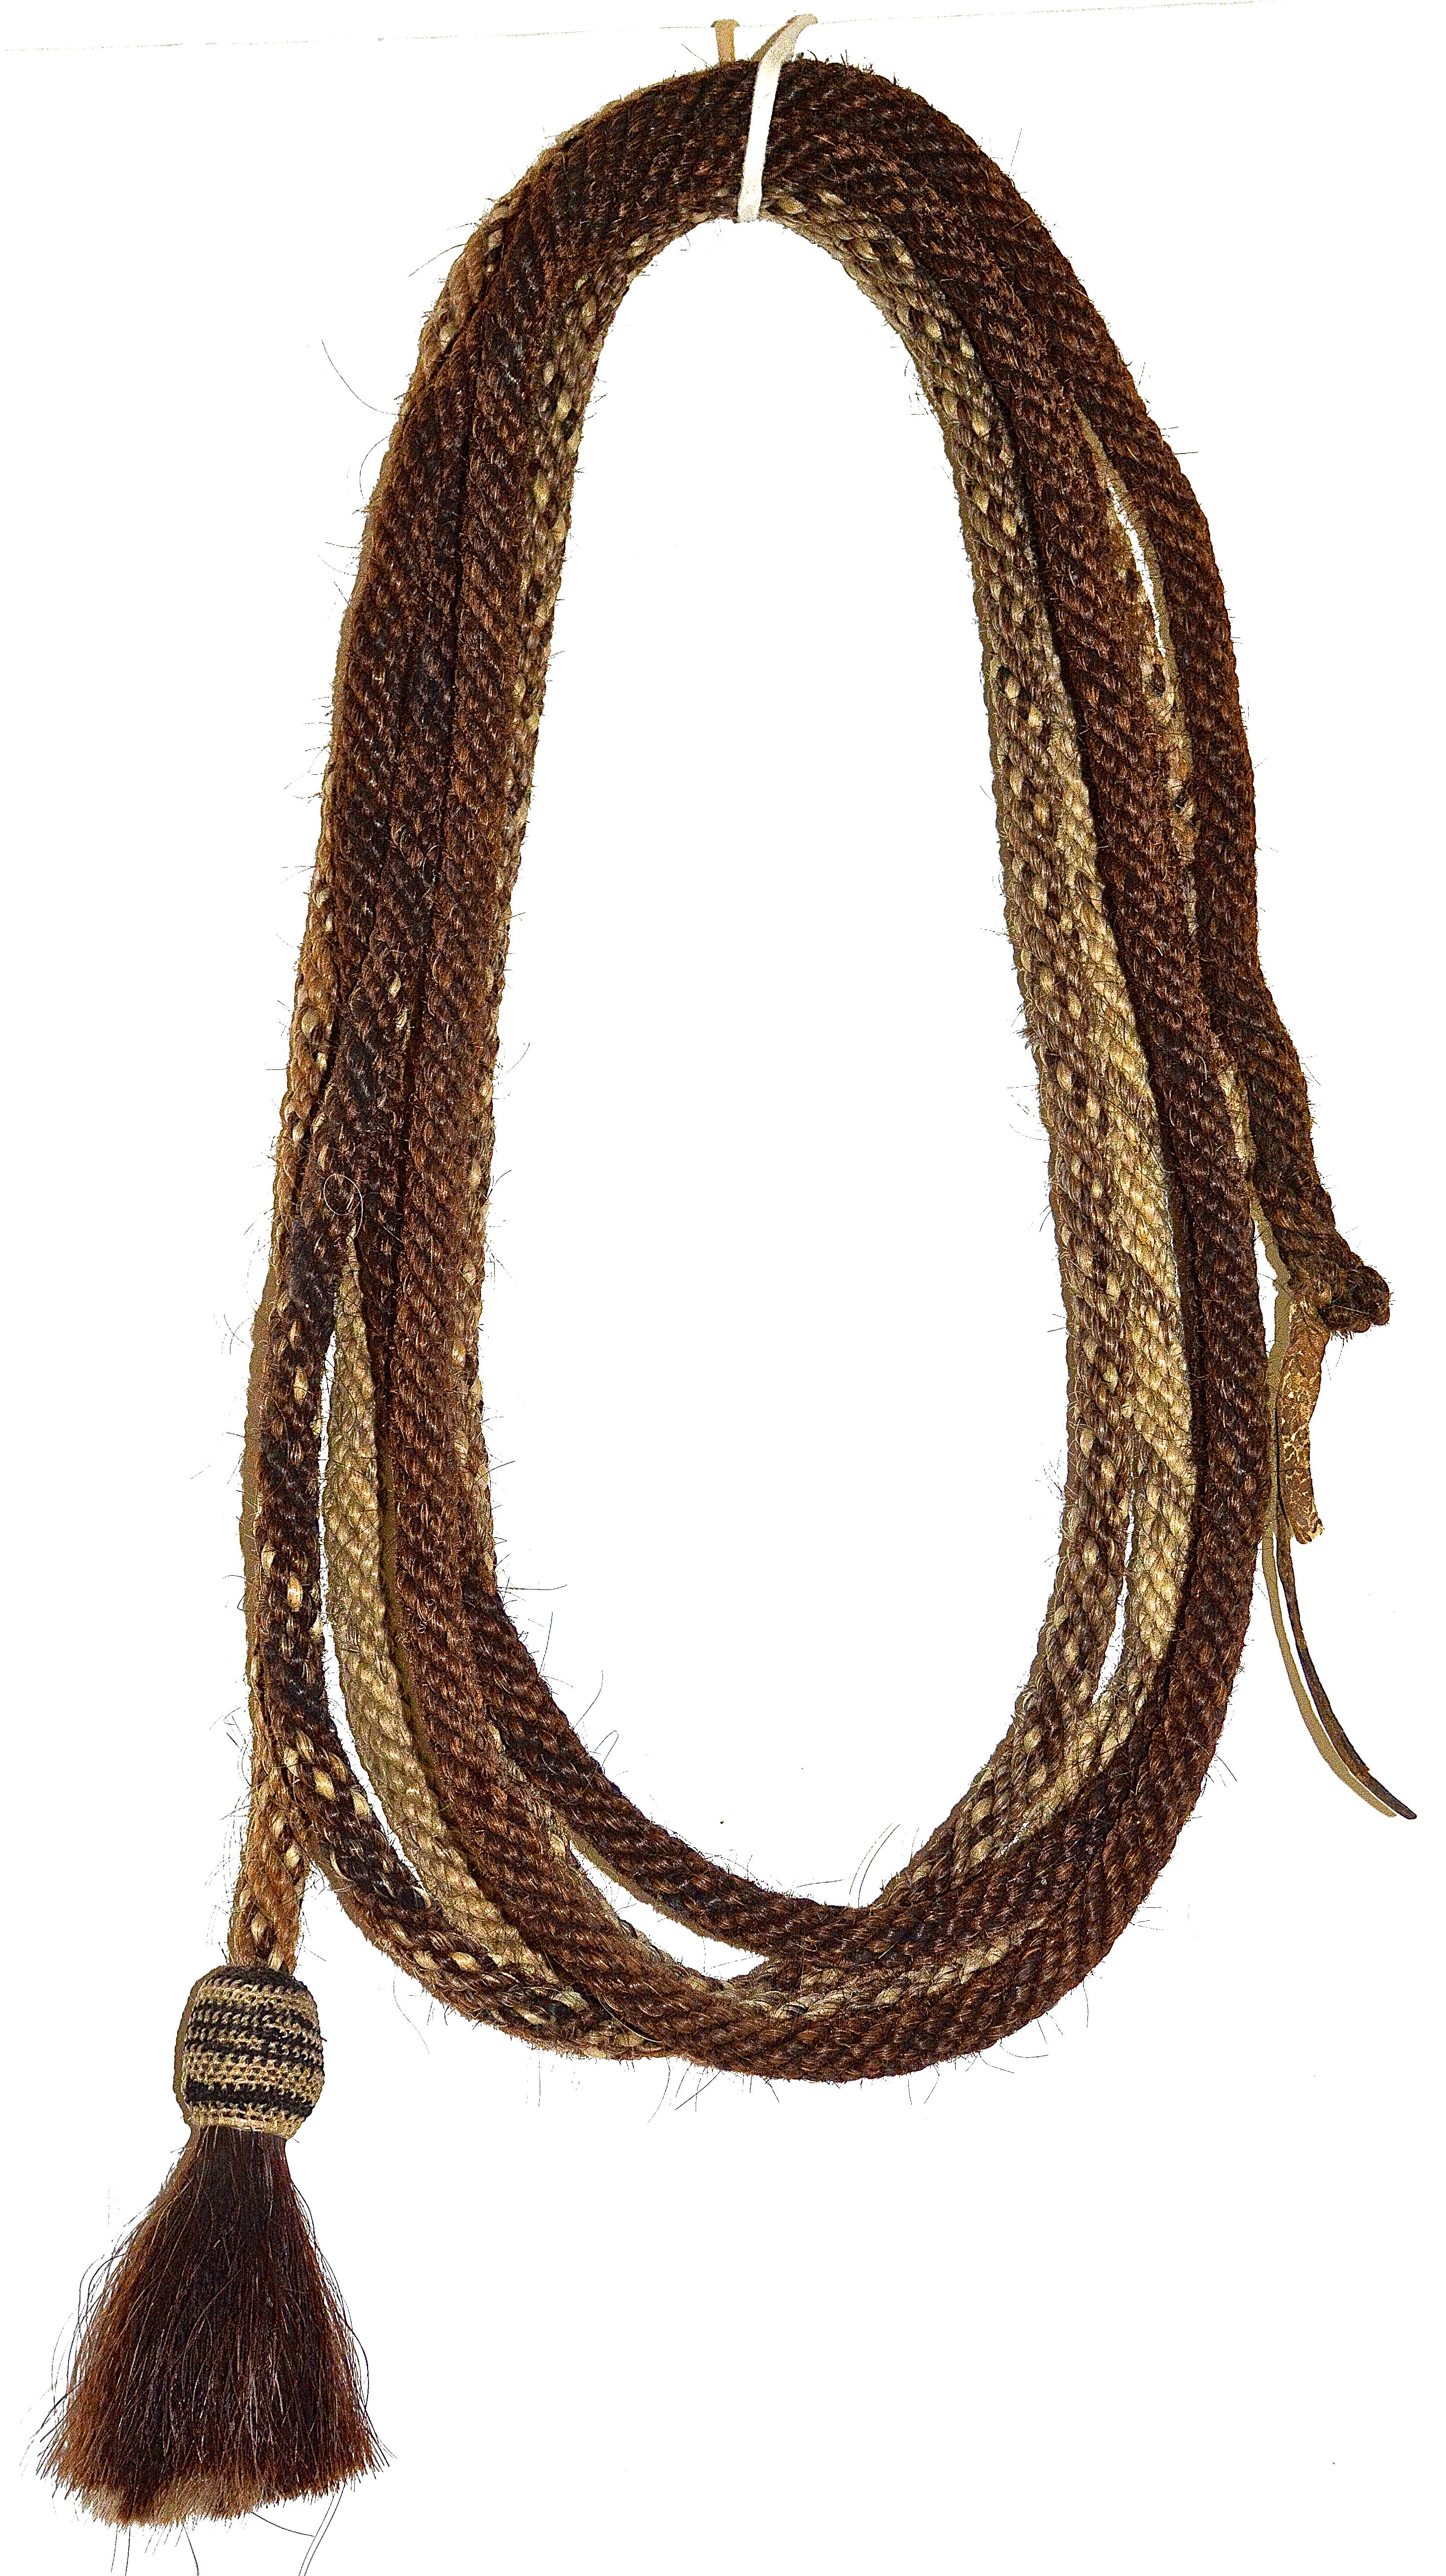 Geflochtenes Navajo-Pferdehaar-Seil
1890s
Geflochtenes Rosshaar, Leder
20 ' lang

Ein seltenes geflochtenes Navajo-Pferdehaarseil aus dem späten 19. Jahrhundert mit einer Gesamtlänge von 20 Fuß, das sich in sehr gutem Originalzustand befindet.